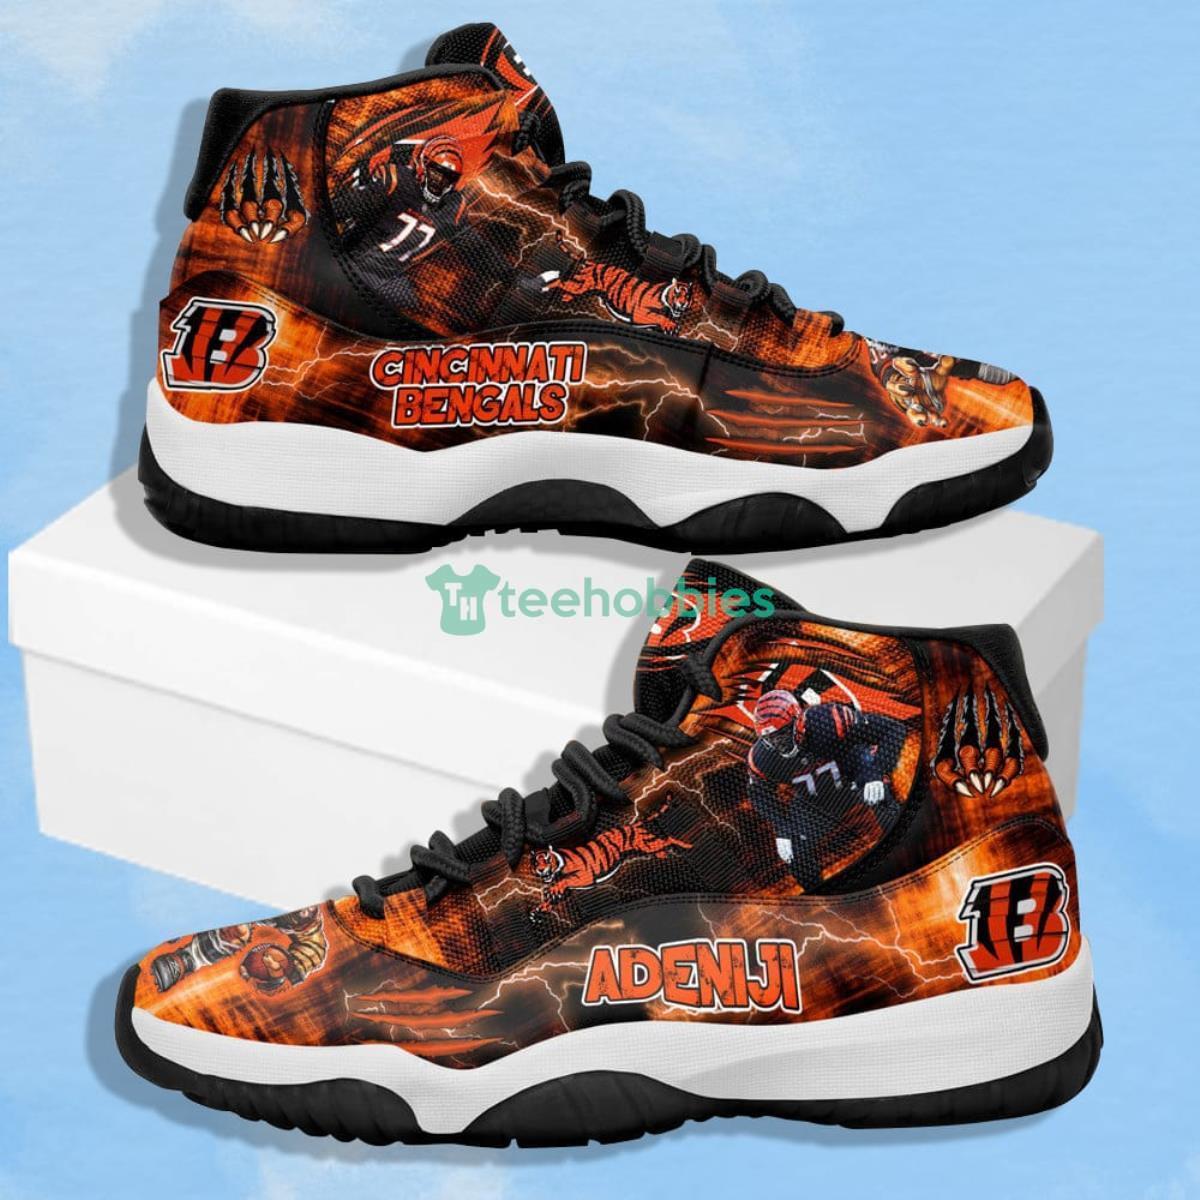 Cincinnati Bengals - Hakeem Adeniji Impressive Design Air Jordan 11 Shoes Product Photo 1